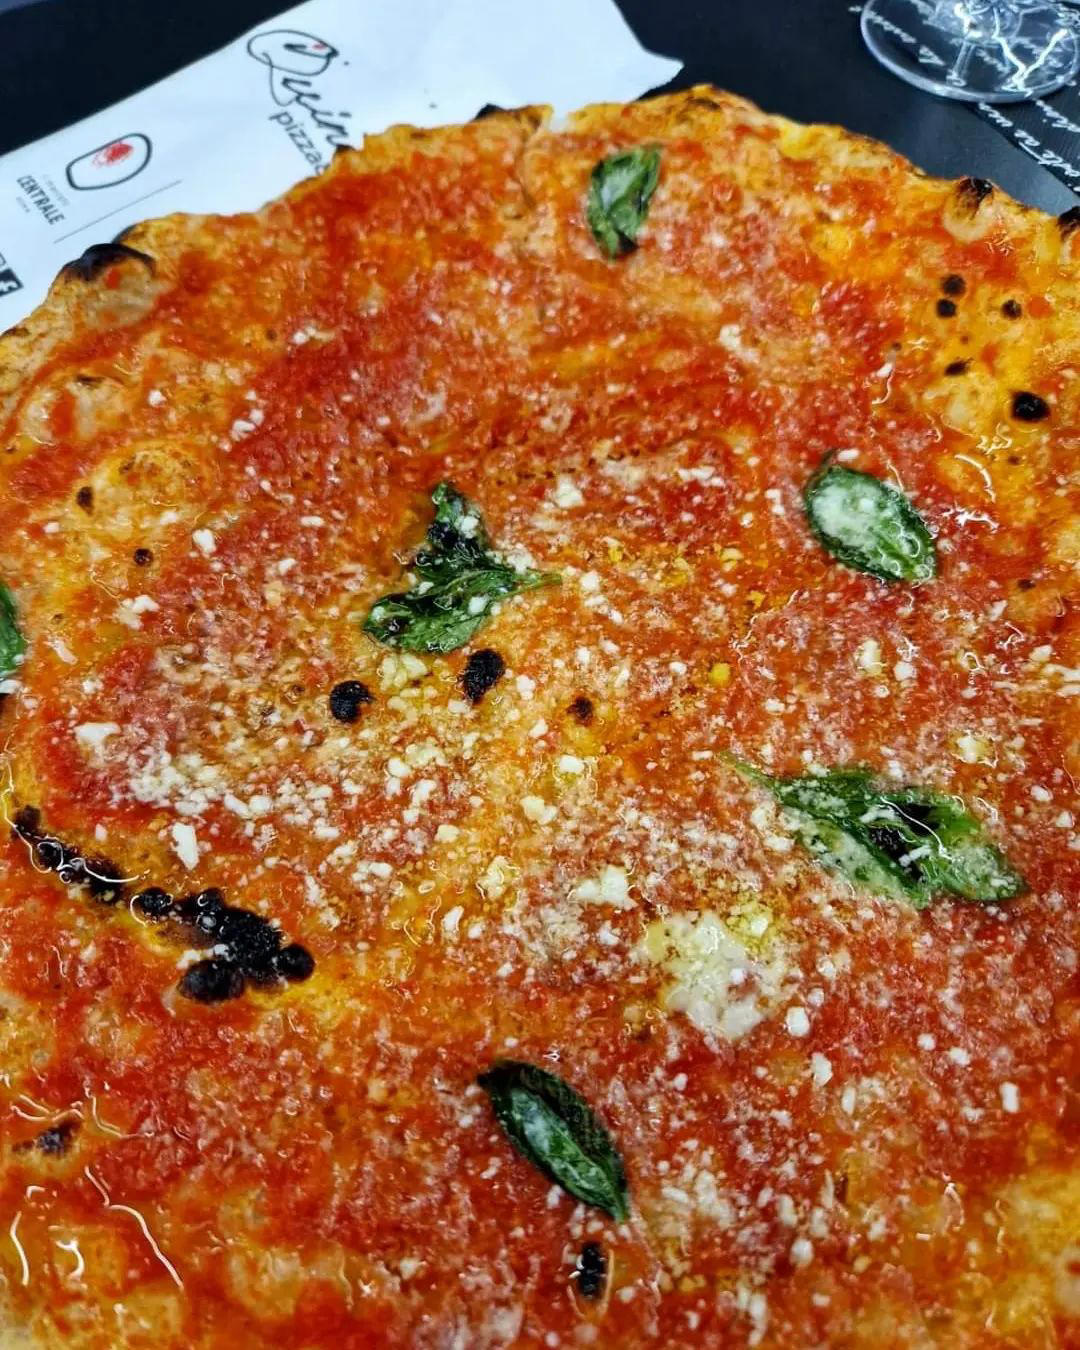 iQuintili - La nostra 𝗖𝗢𝗦𝗔𝗖𝗖𝗔 in stile ruota di carro, una pizza semplice e gustosa